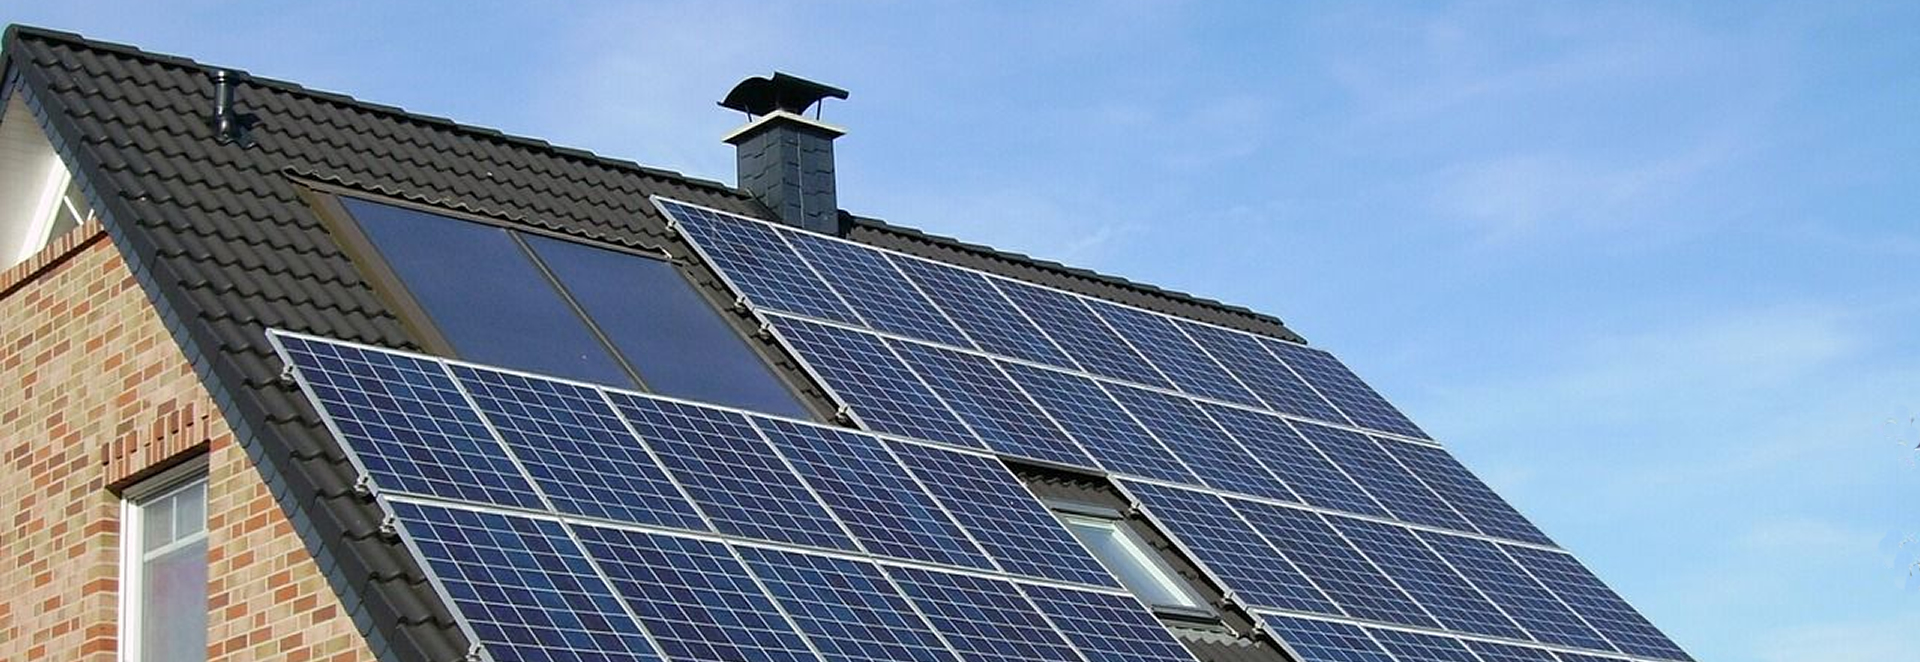 Ihre Photovoltaik-Anlage auf dem Dach hat viel Geld gekosten und soll nun möglichst lange halten. Wie muss ich die wertvolle Technik versichern? Wir beraten Sie individuell